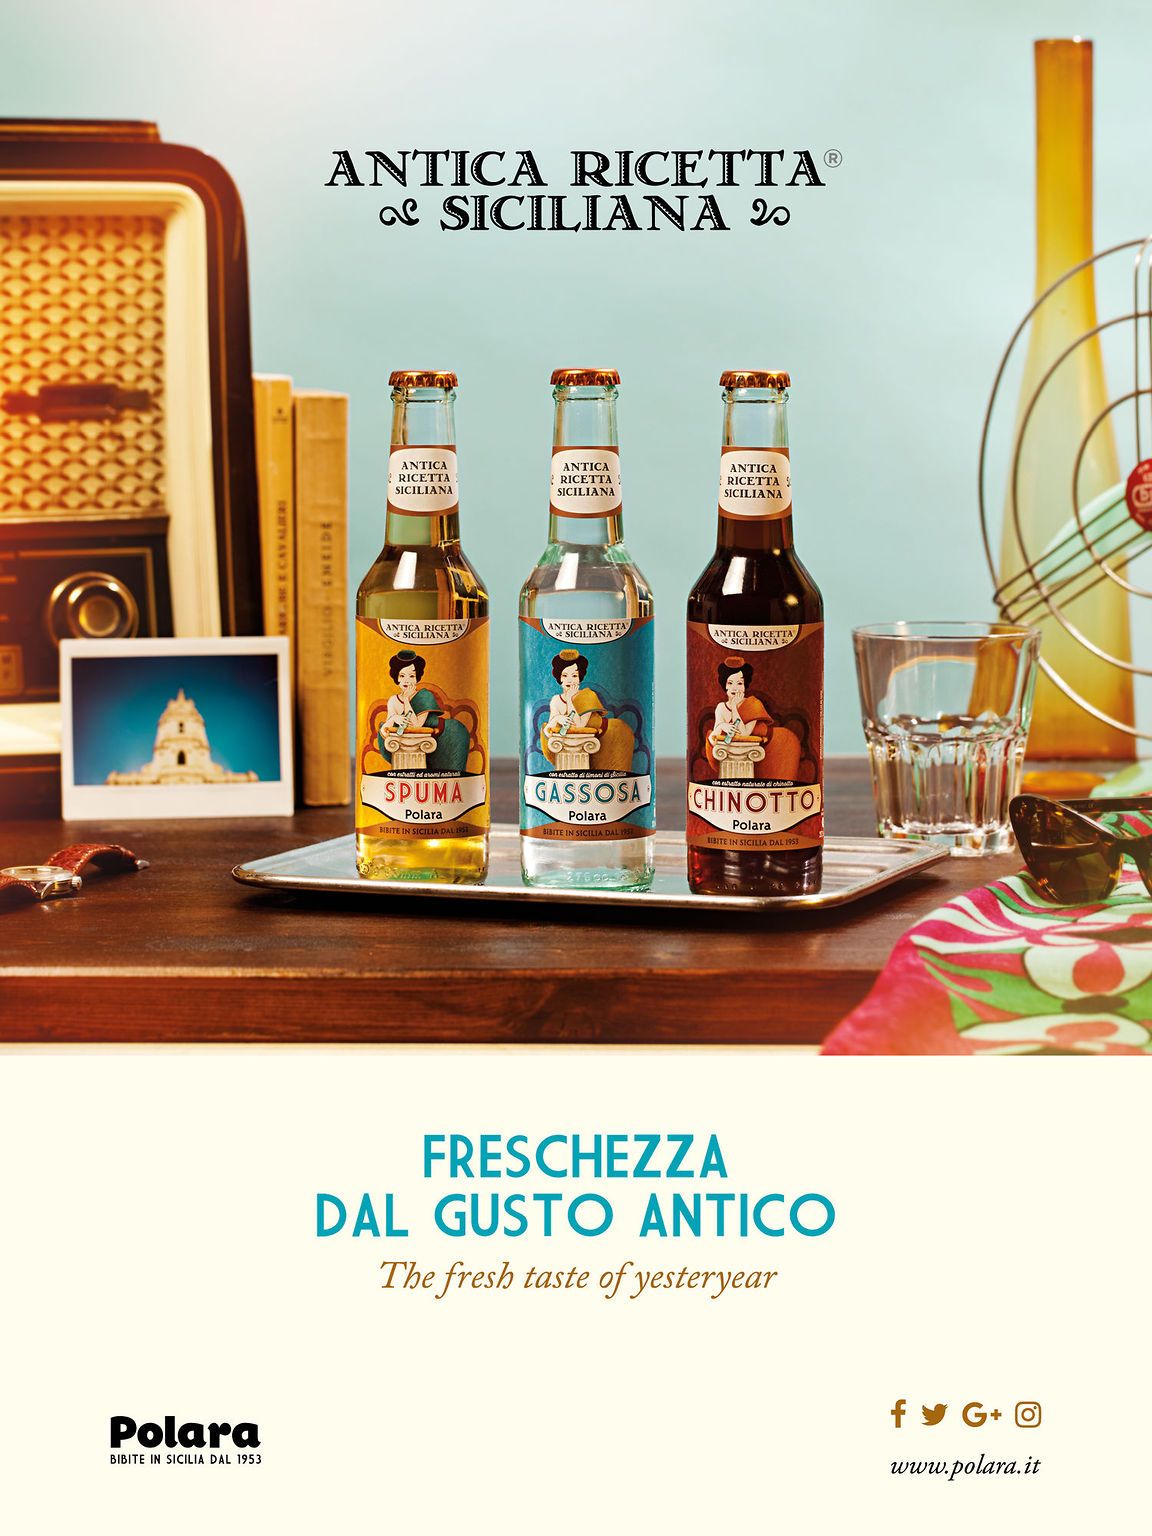 Advertising bibite Antica Ricetta Siciliana